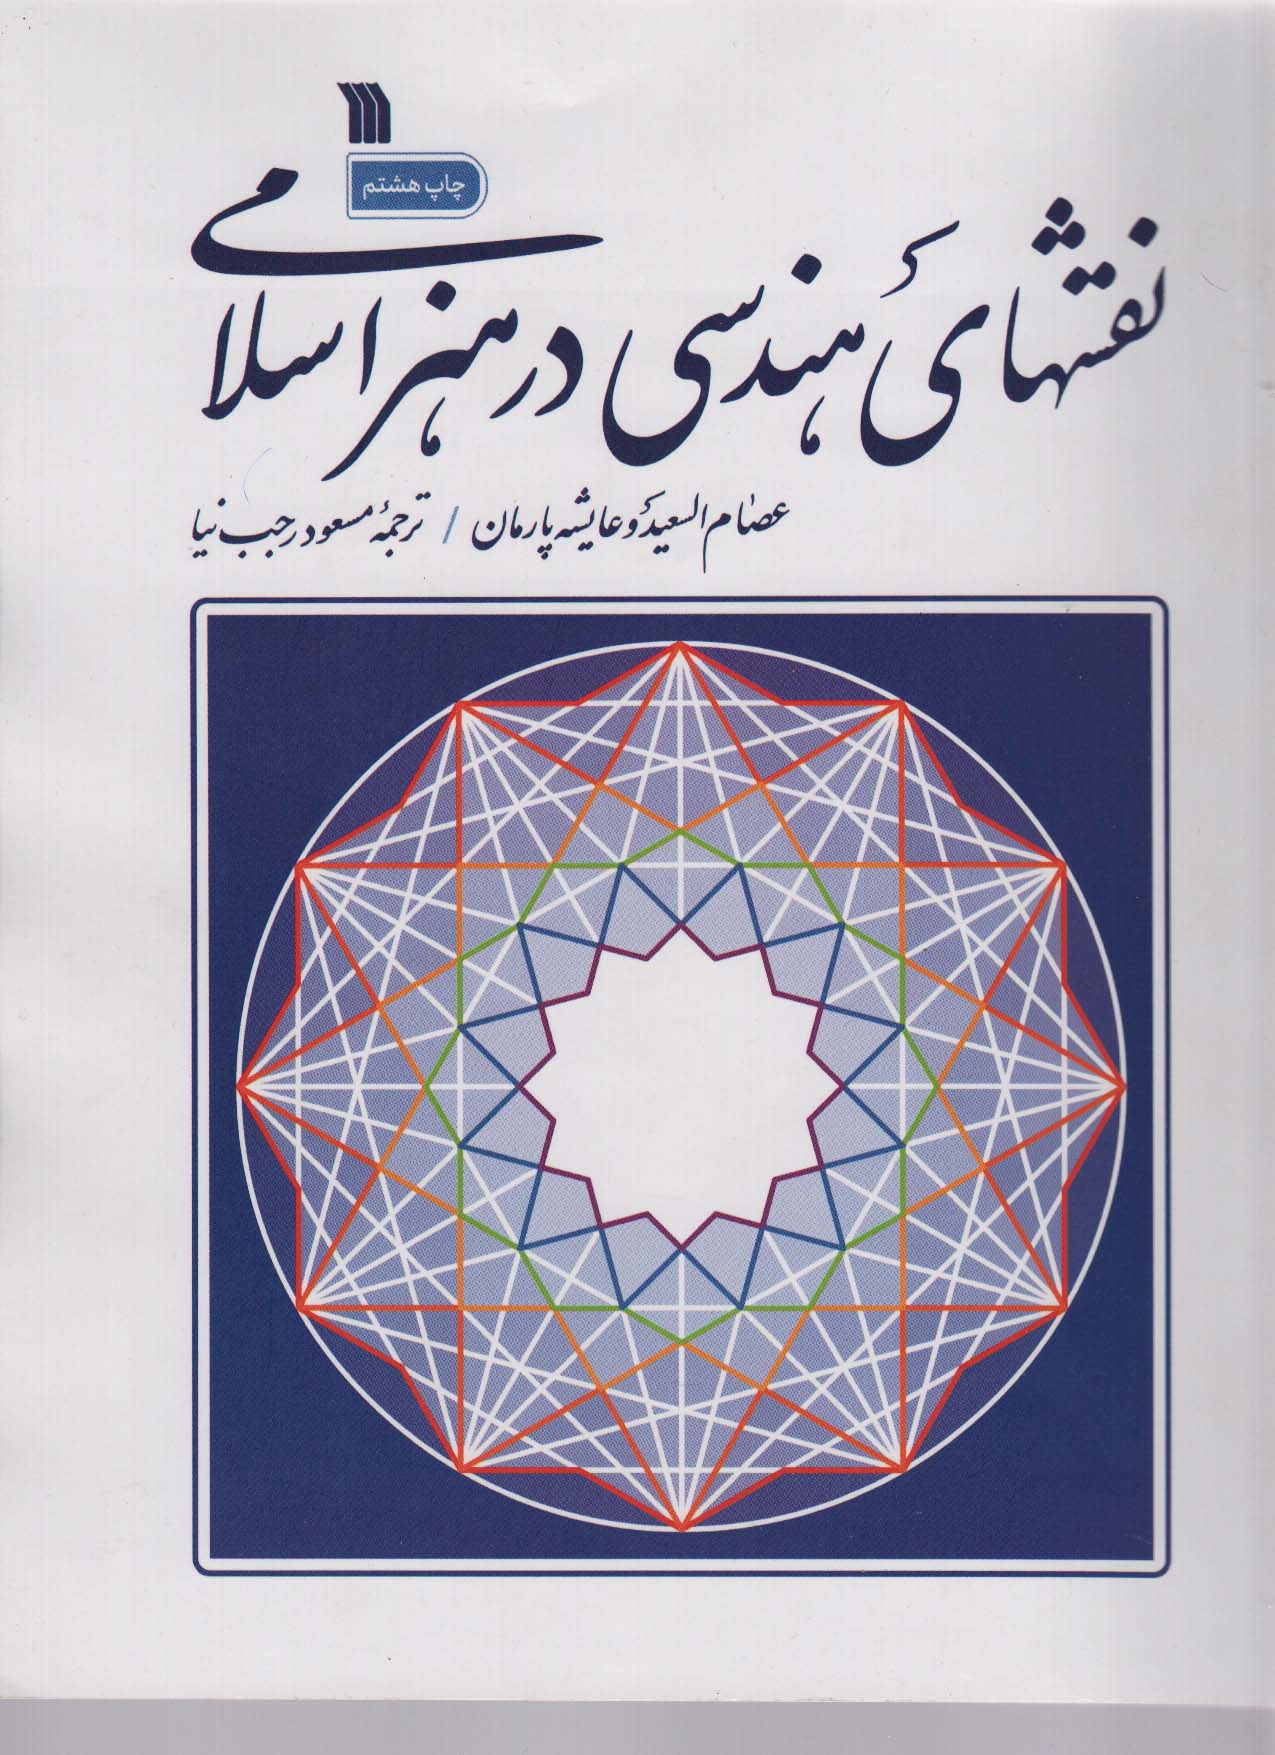 نقش های هندسی در هنر اسلامی